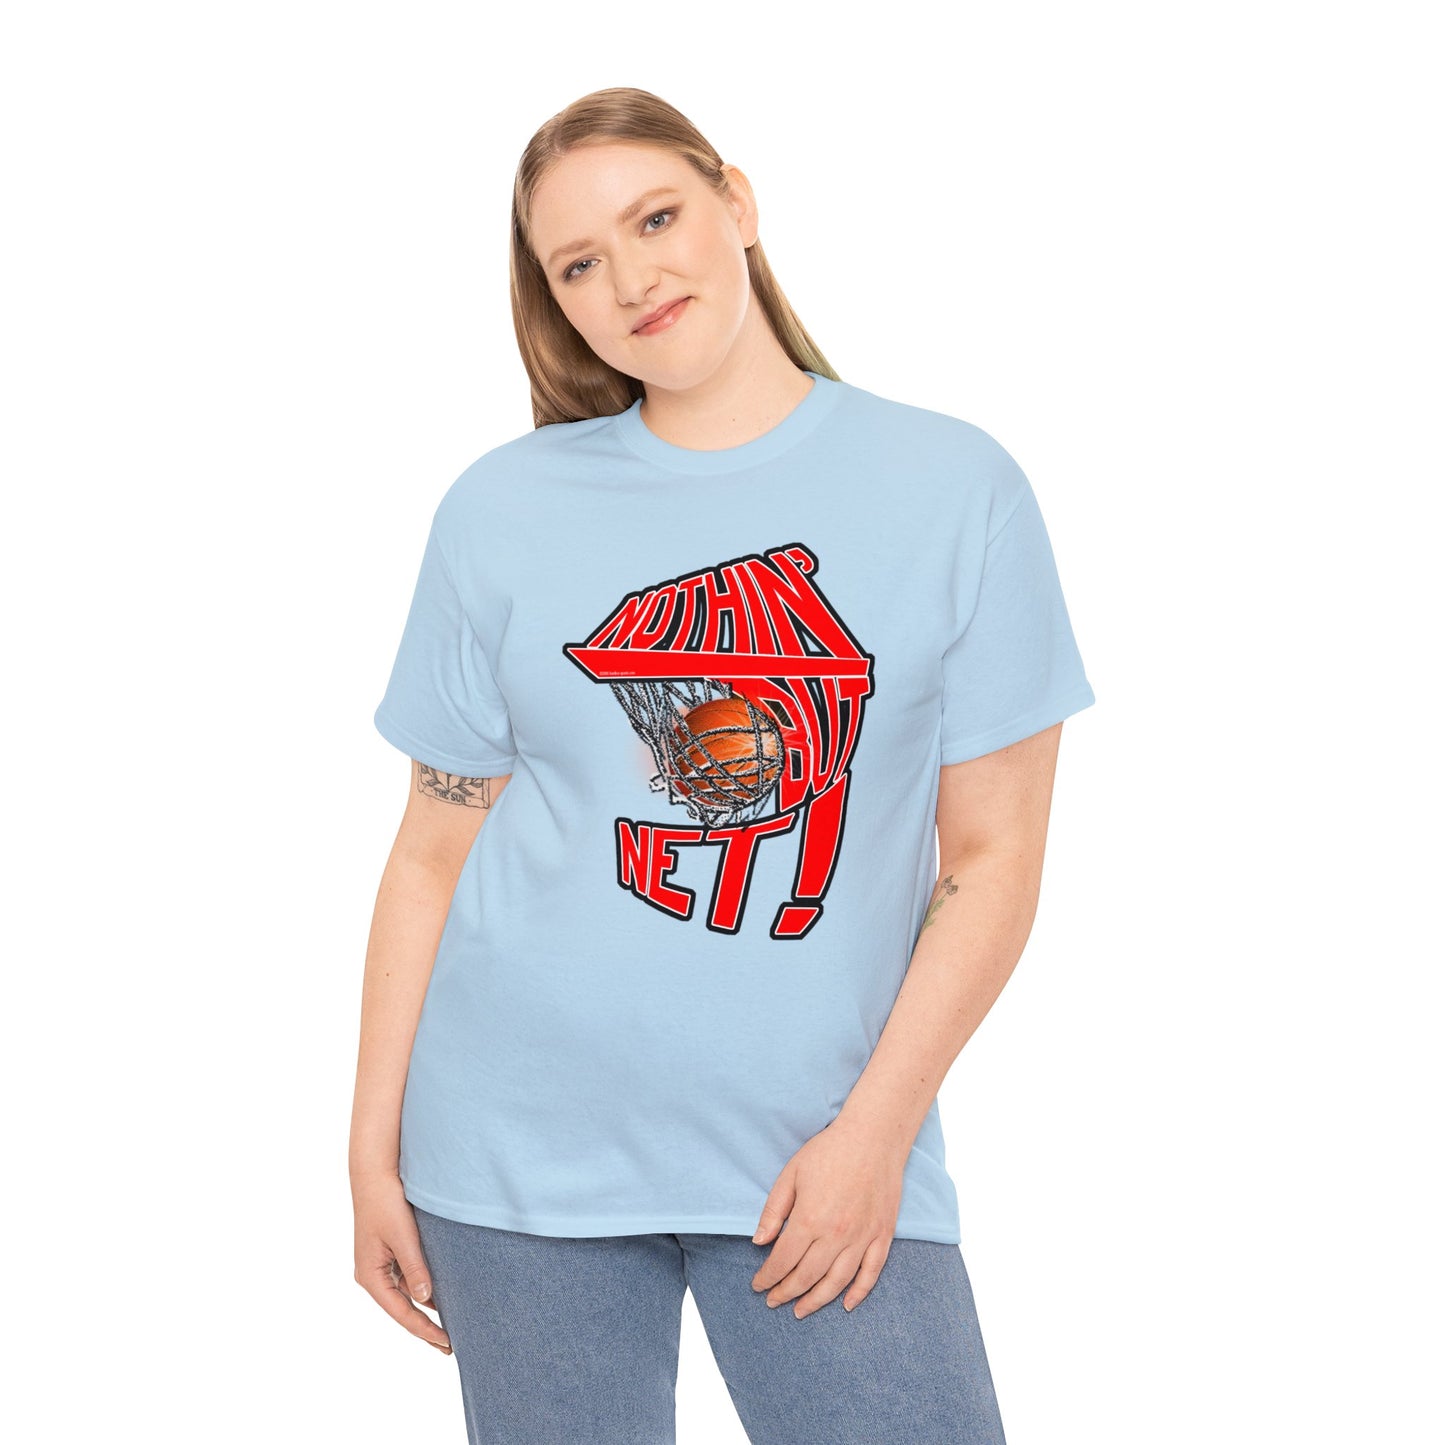 Nothin' But Net, Basketball T-Shirt, Slam Dunk, Basketball Swishing, Hoops T-Shirt, Basketball net, Funny T-Shirt,, Basketball Gift,